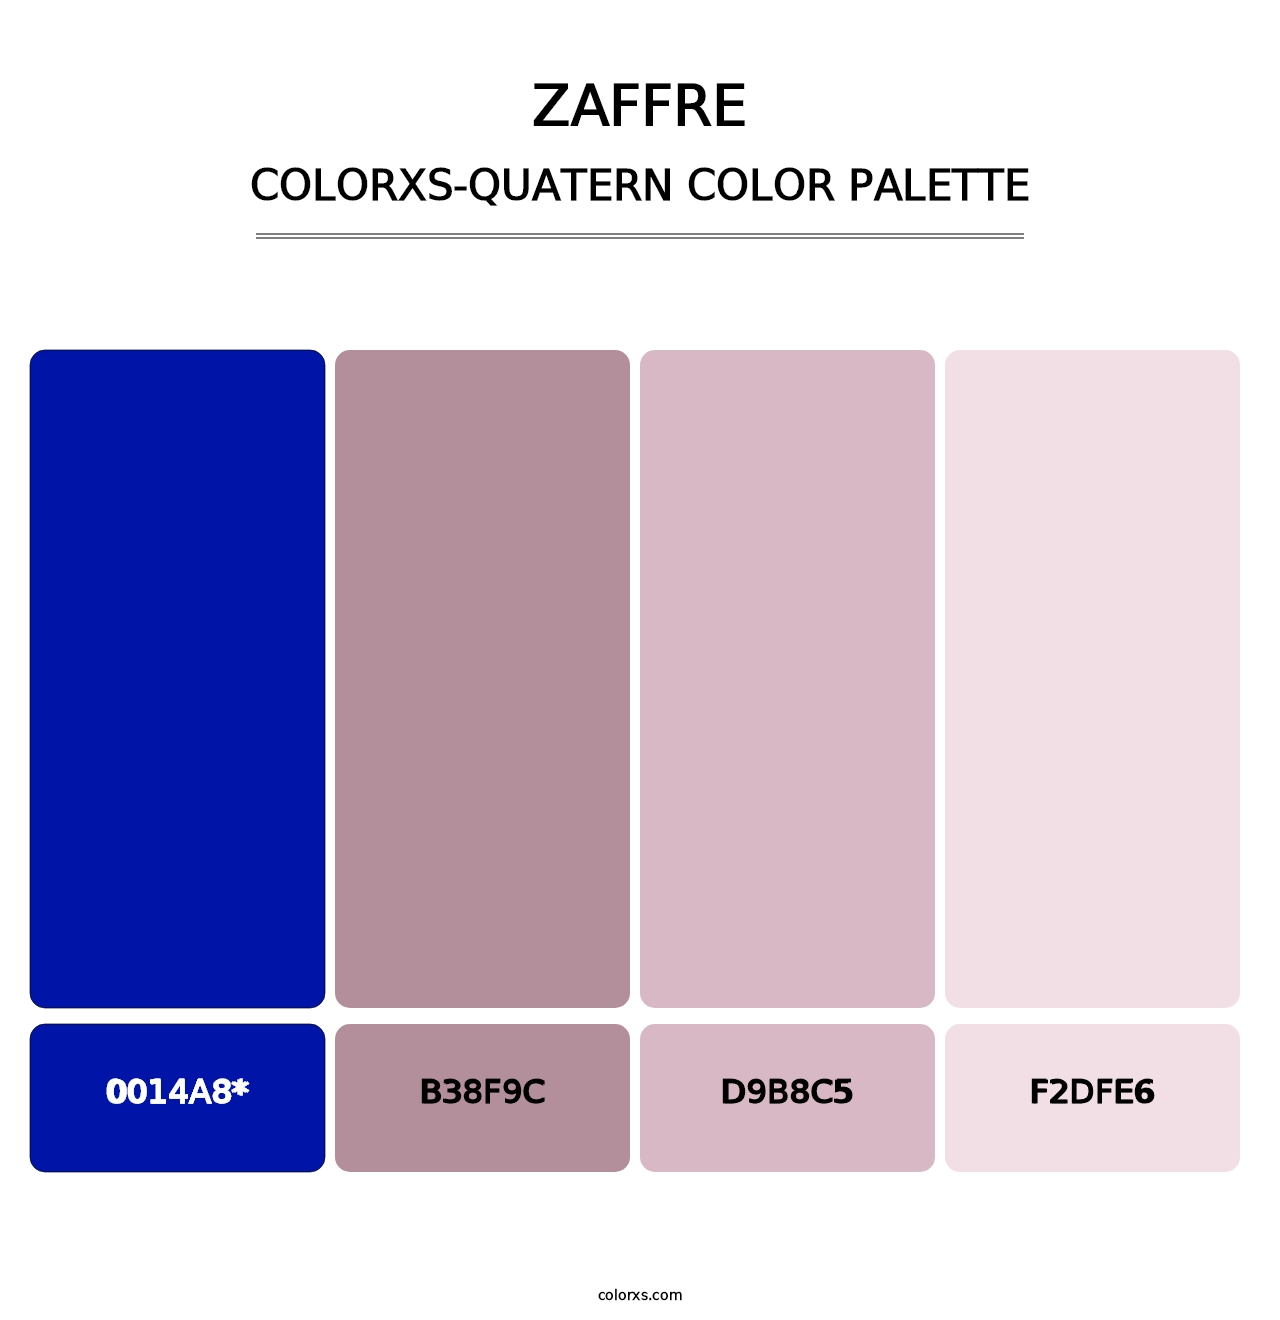 Zaffre - Colorxs Quatern Palette